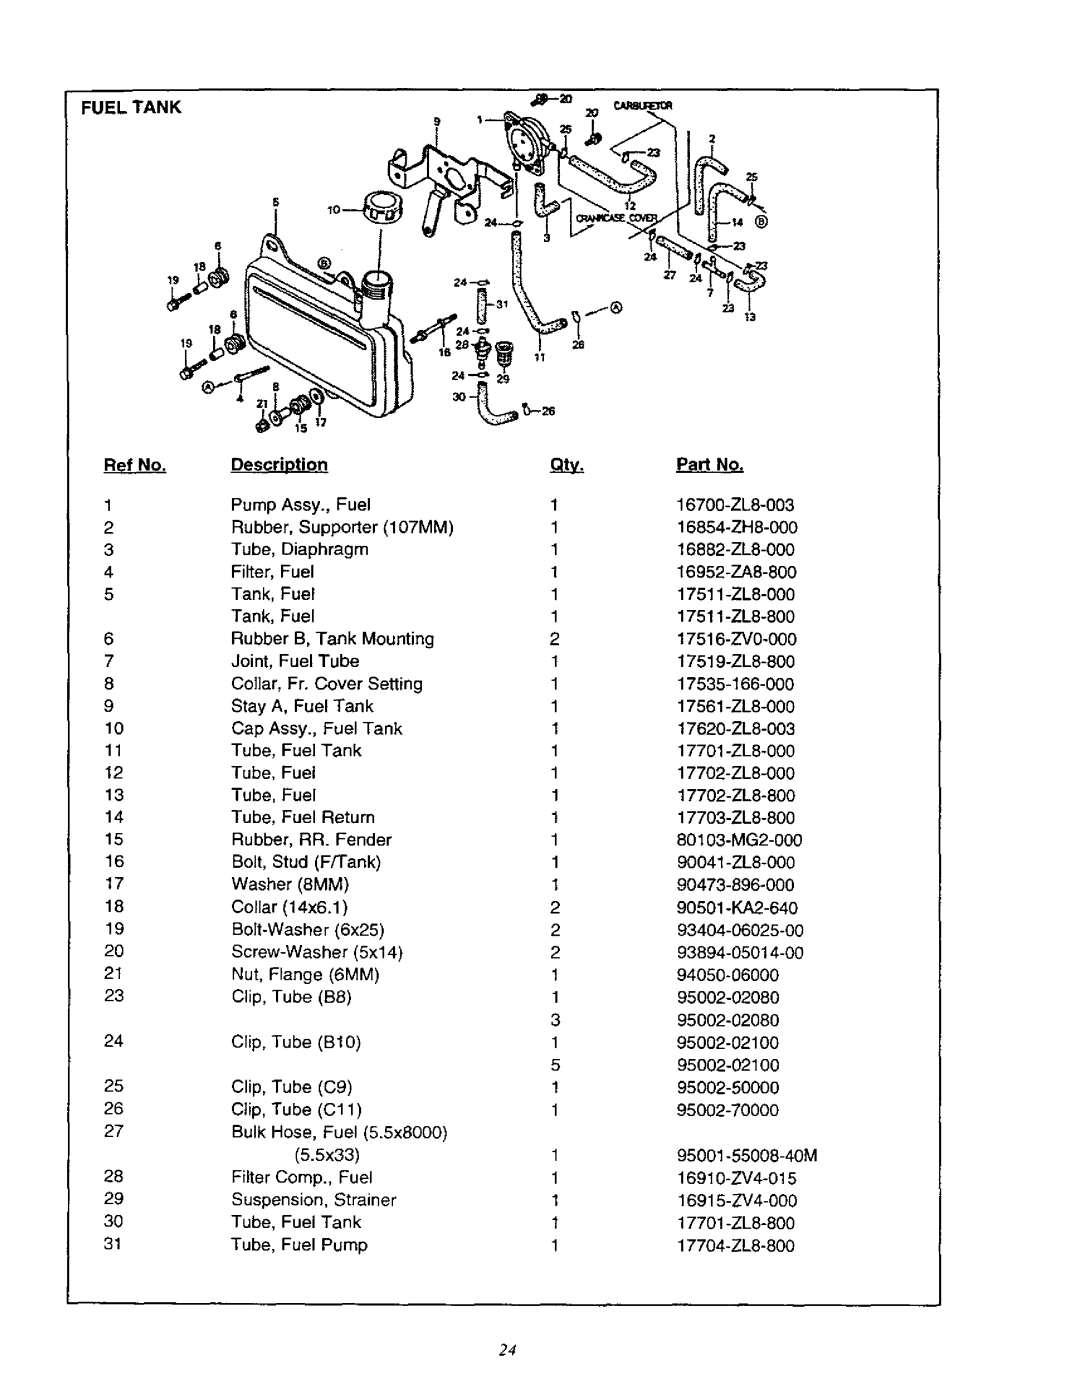 Craftsman 580.76201 owner manual Ref No, Description, Pad No 